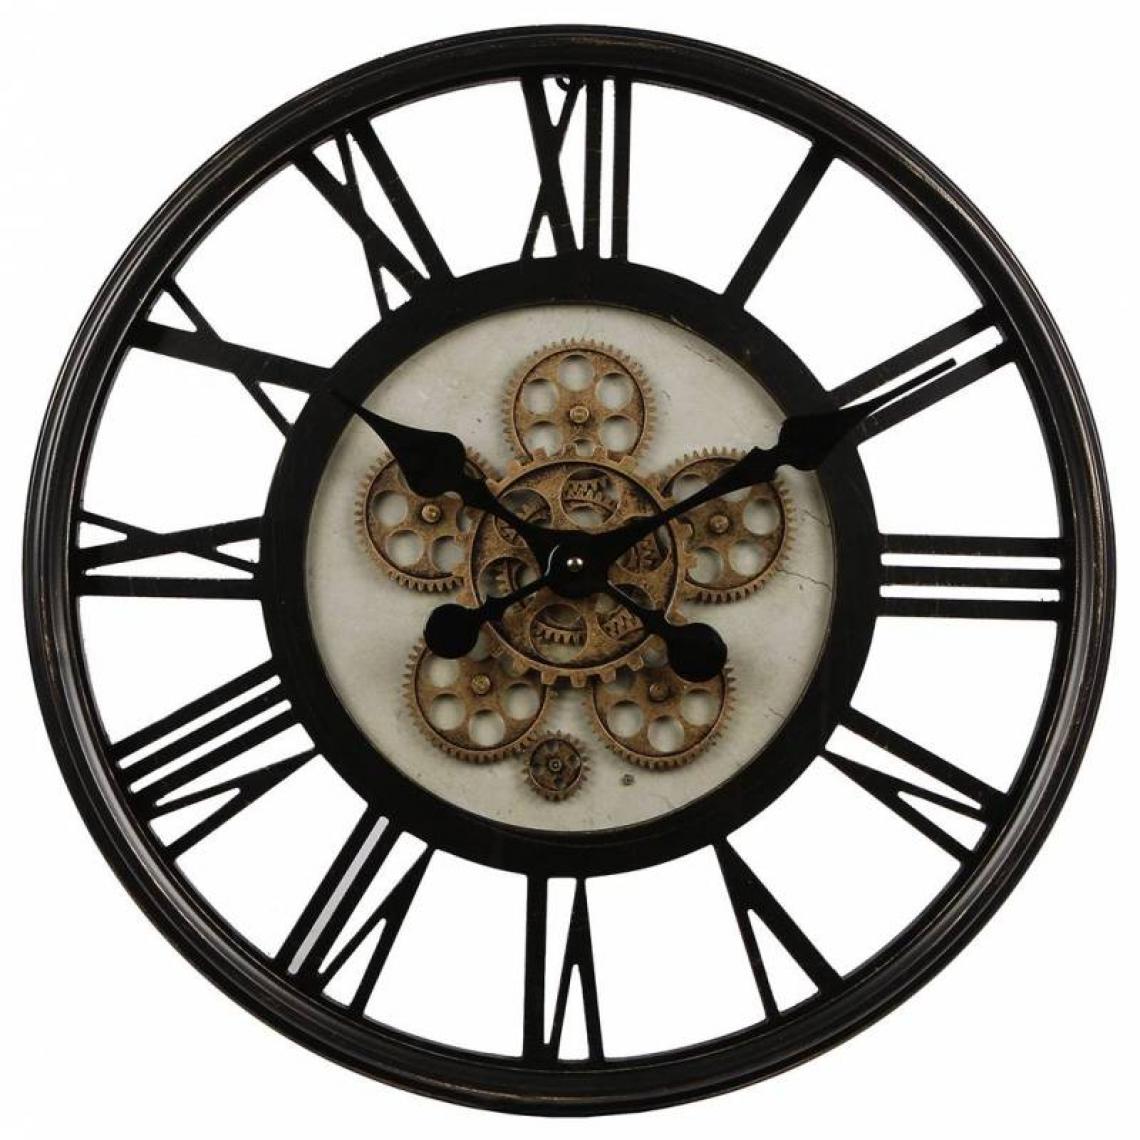 L'Héritier Du Temps - Grande Horloge Ronde Pendule Murale Vintage Industriel Style Usine en Métal Noir et Verre 7x54,5x54,5cm - Horloges, pendules